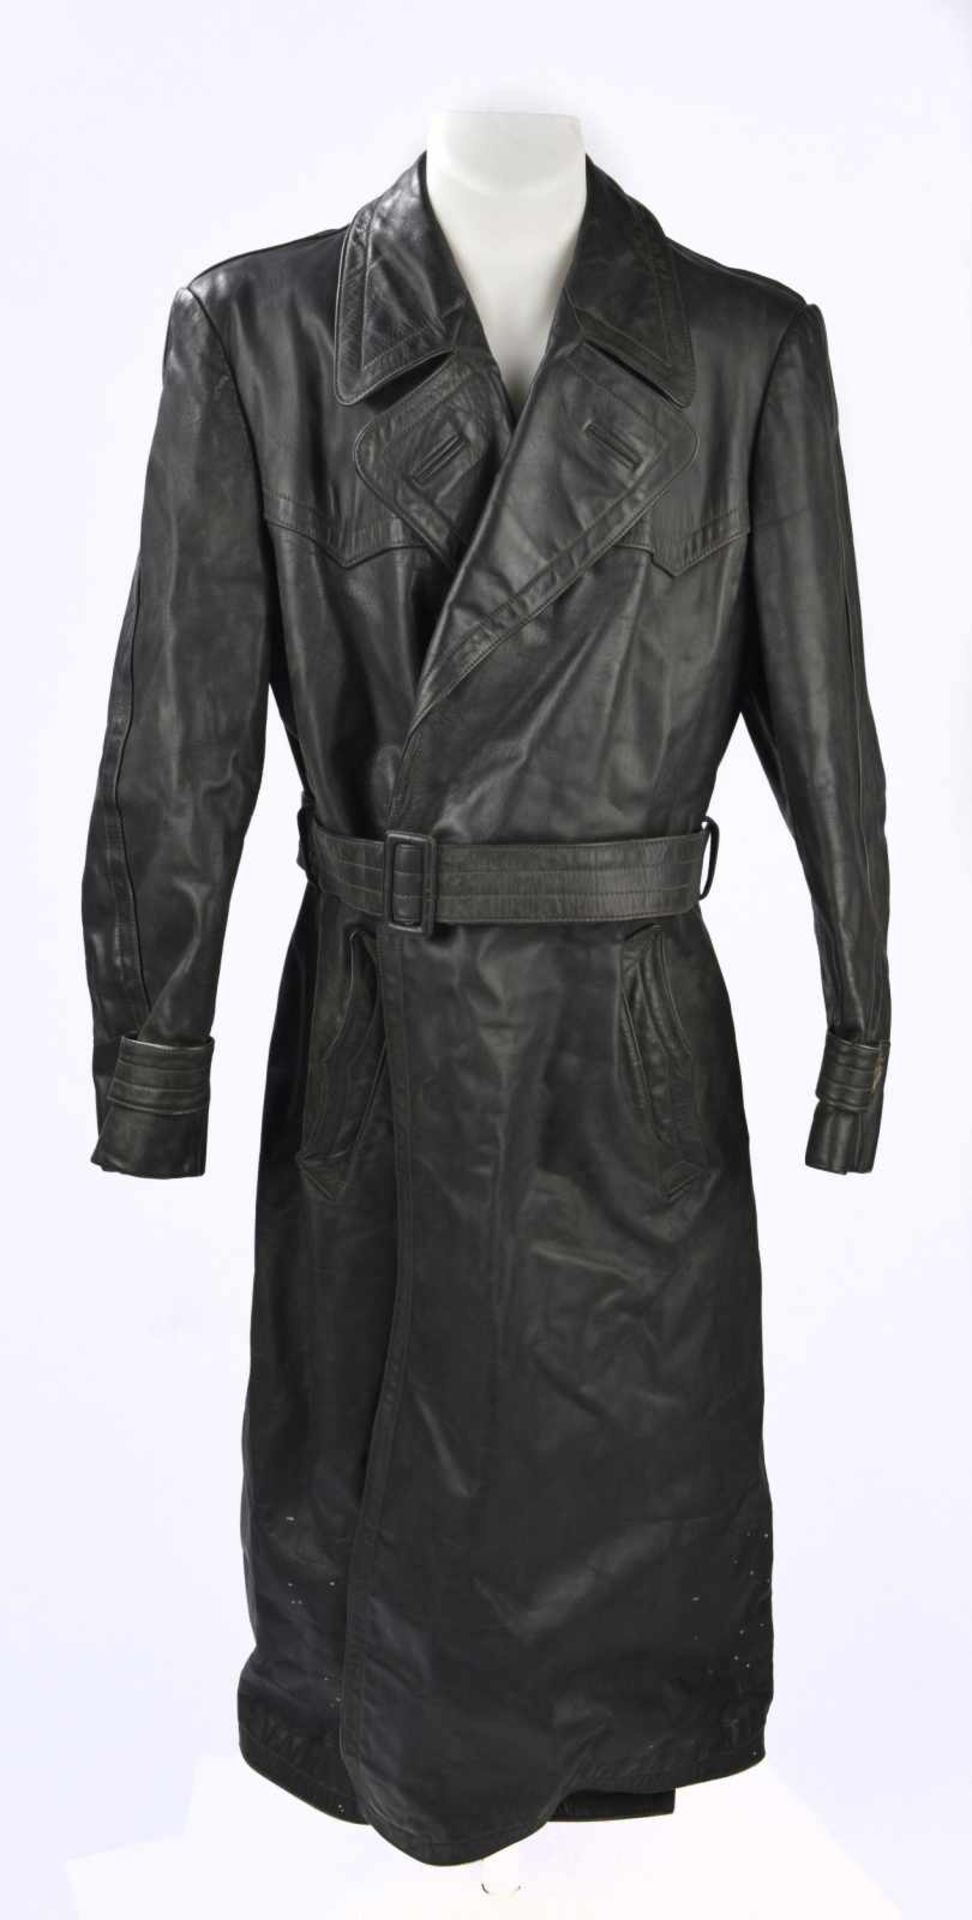 Manteau dofficier en cuir en épais cuir noir, tous les boutons sont présents, ainsi que la ceinture